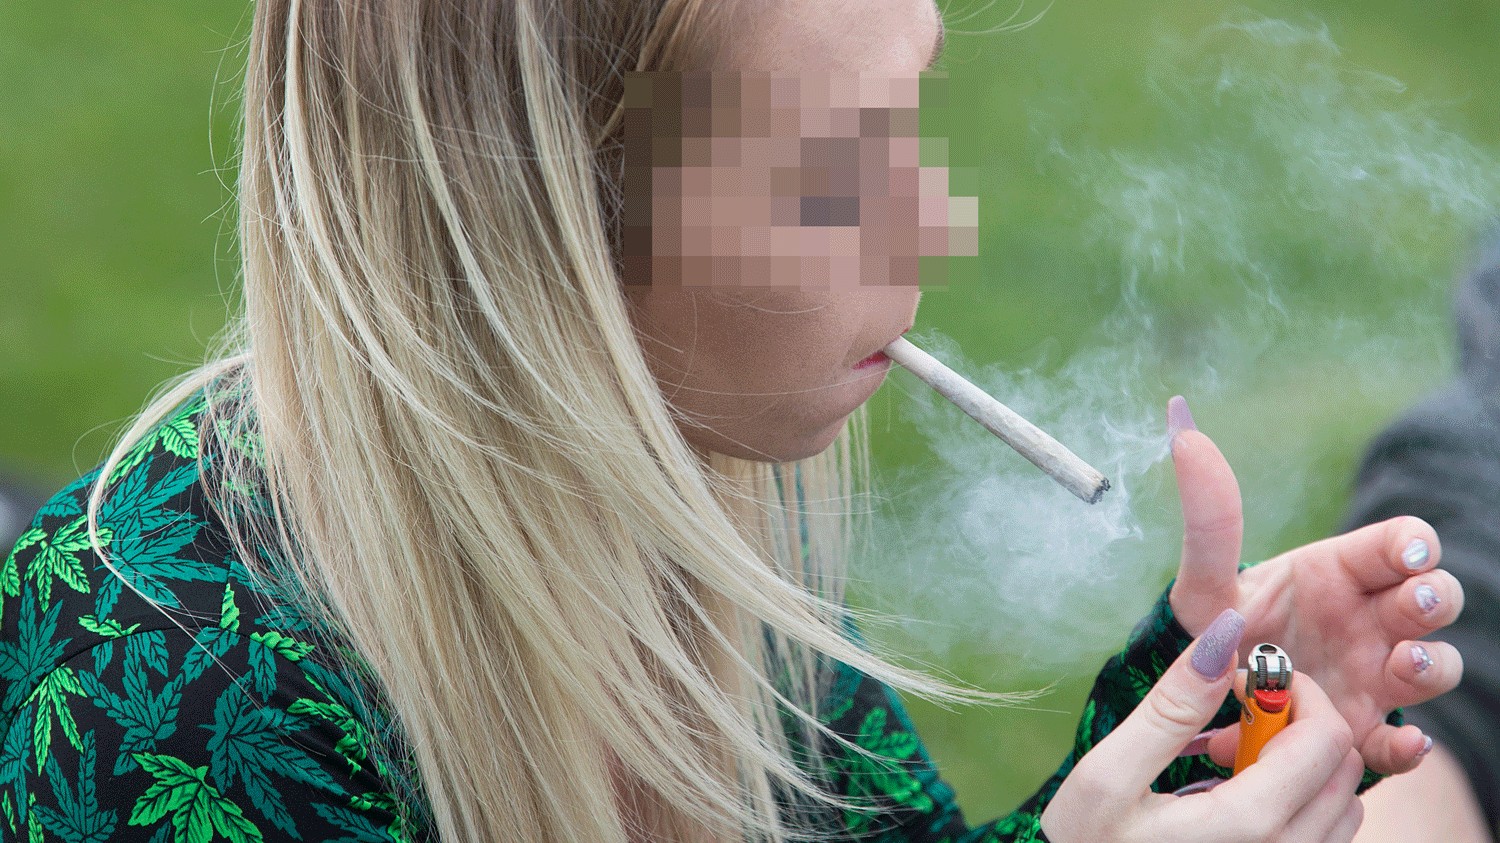 Videos girls smoking weed 7 Women